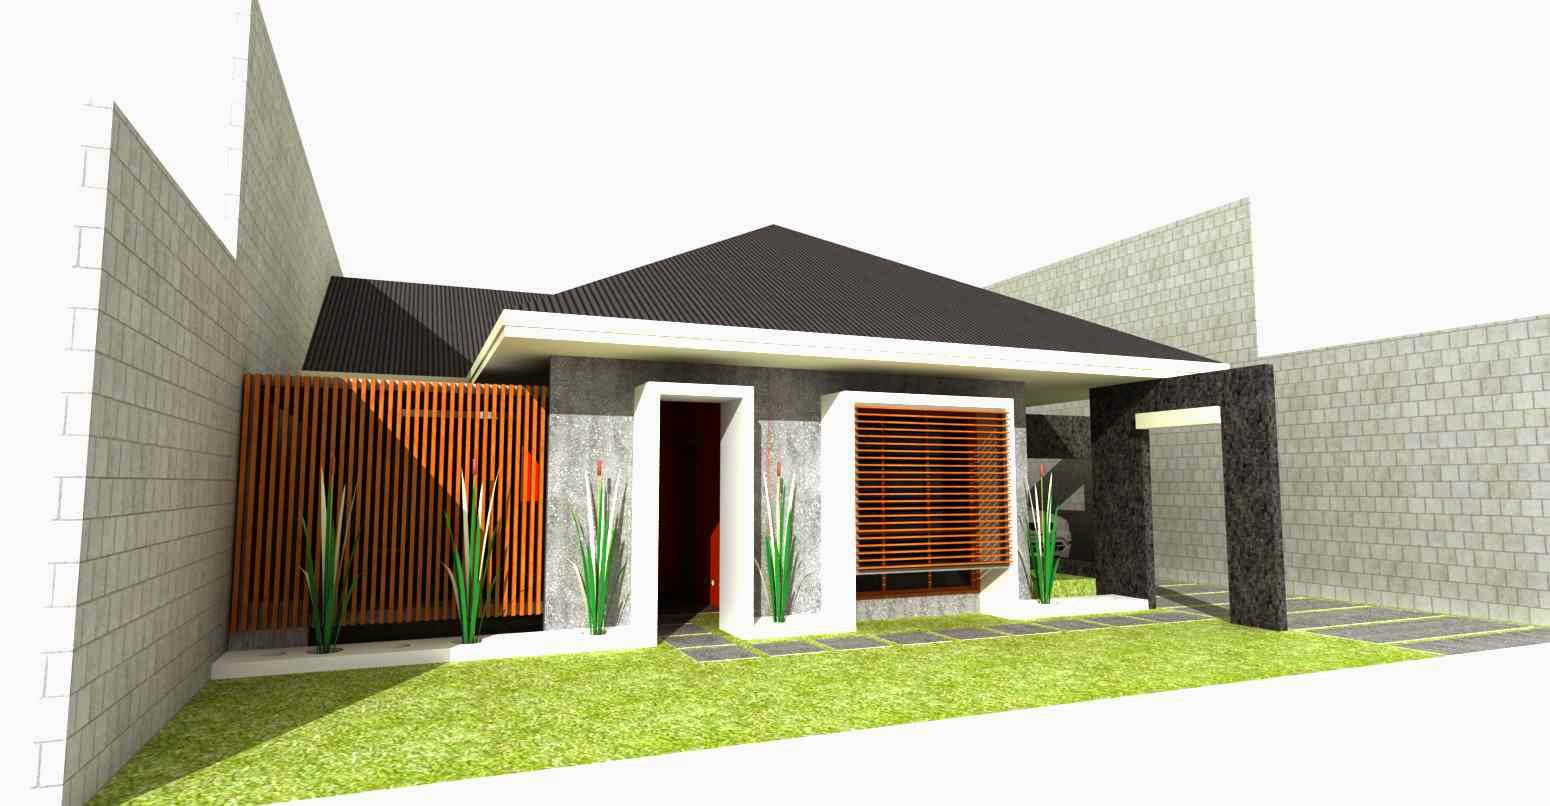 64 Desain Rumah Minimalis Atap Asbes Desain Rumah Minimalis Terbaru